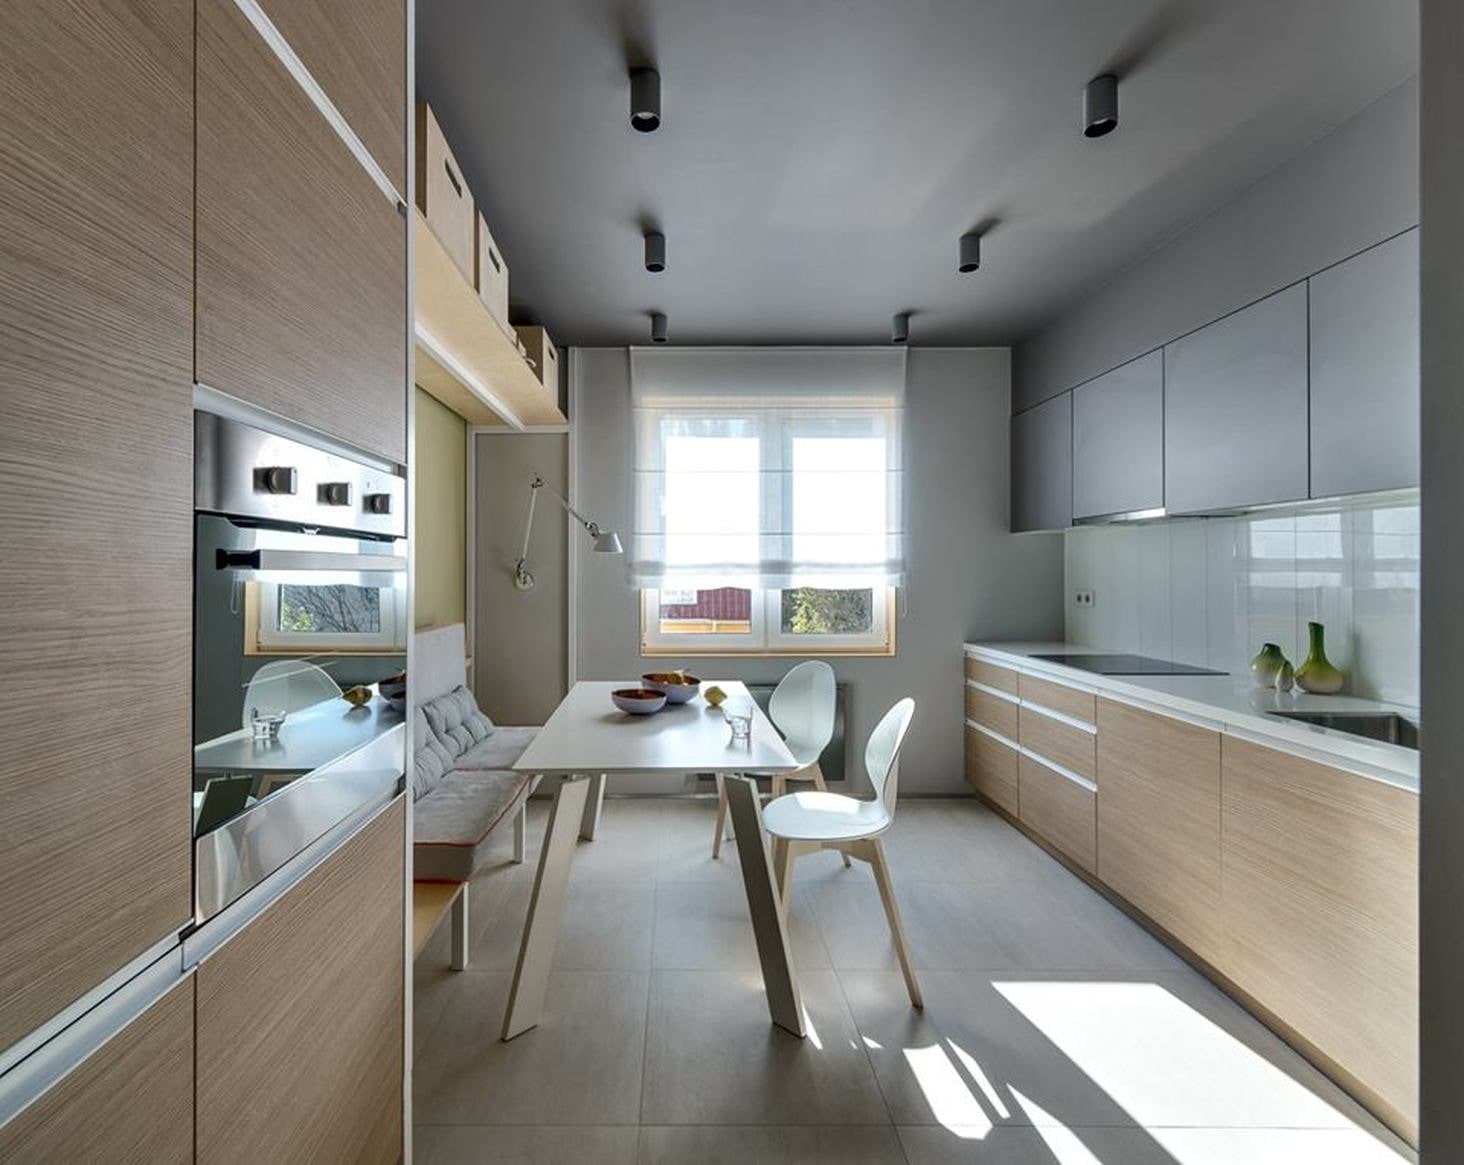 Кухня-гостиная площадью 40 кв. м. в частном доме, студии или квартире: нюансы оформления